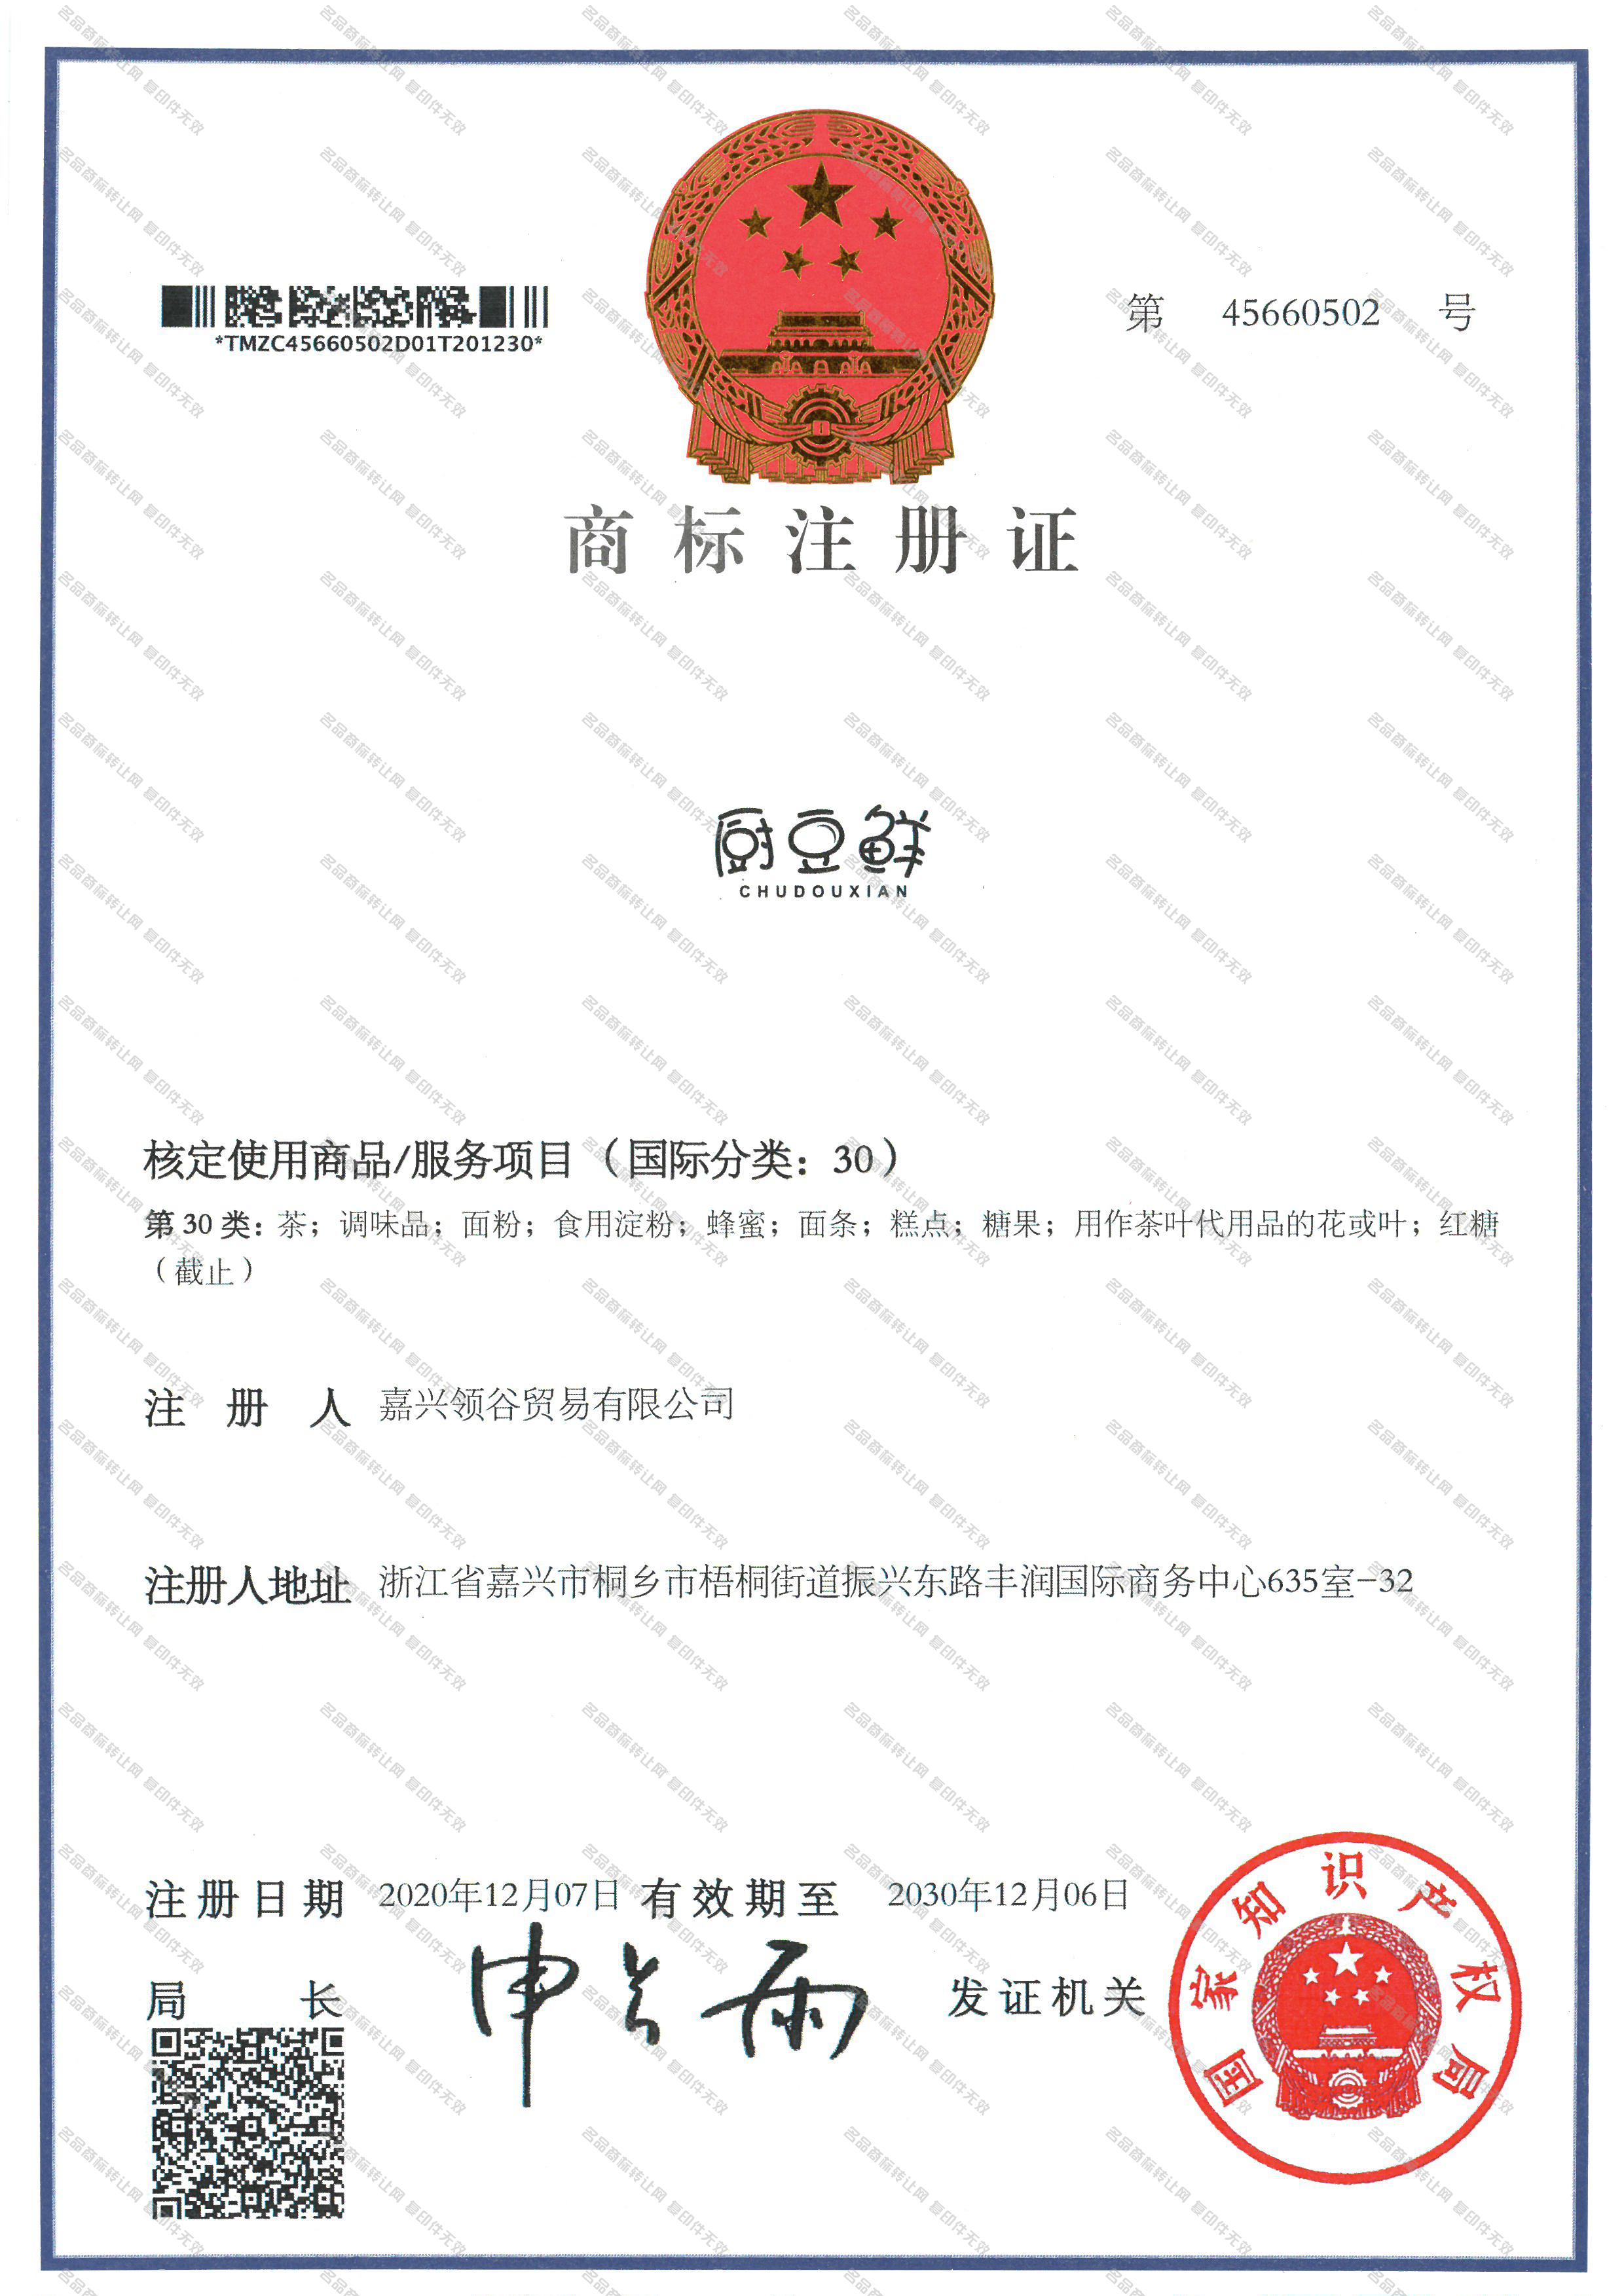 厨豆鲜 CHU DOU XIAN注册证